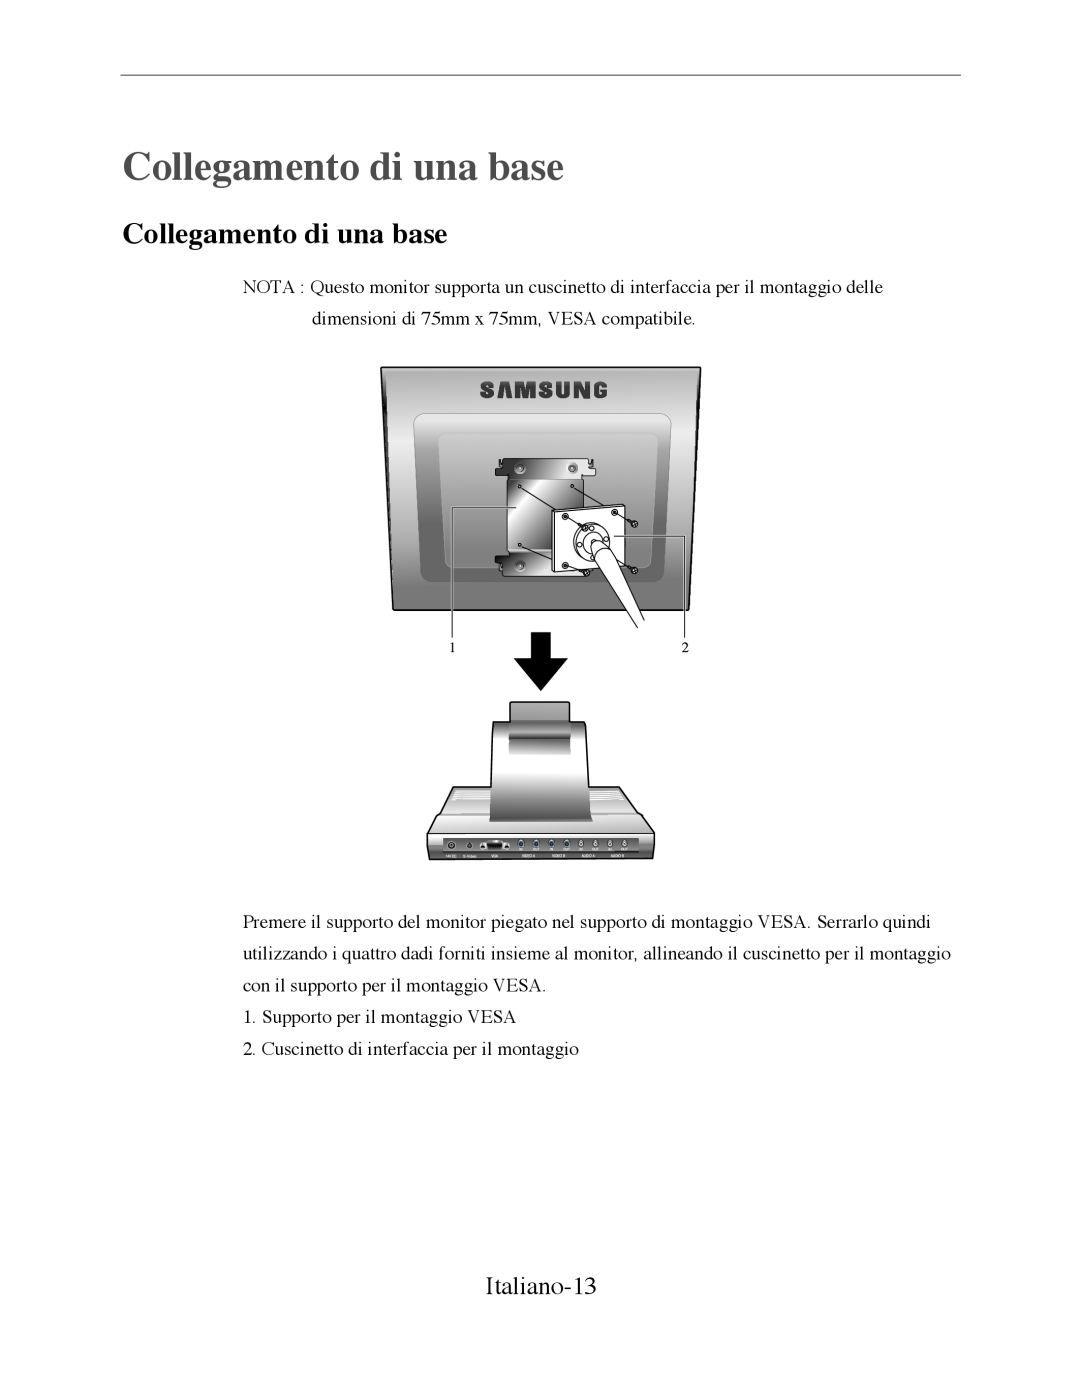 Samsung SMT-170P manual Collegamento di una base, Italiano-13 